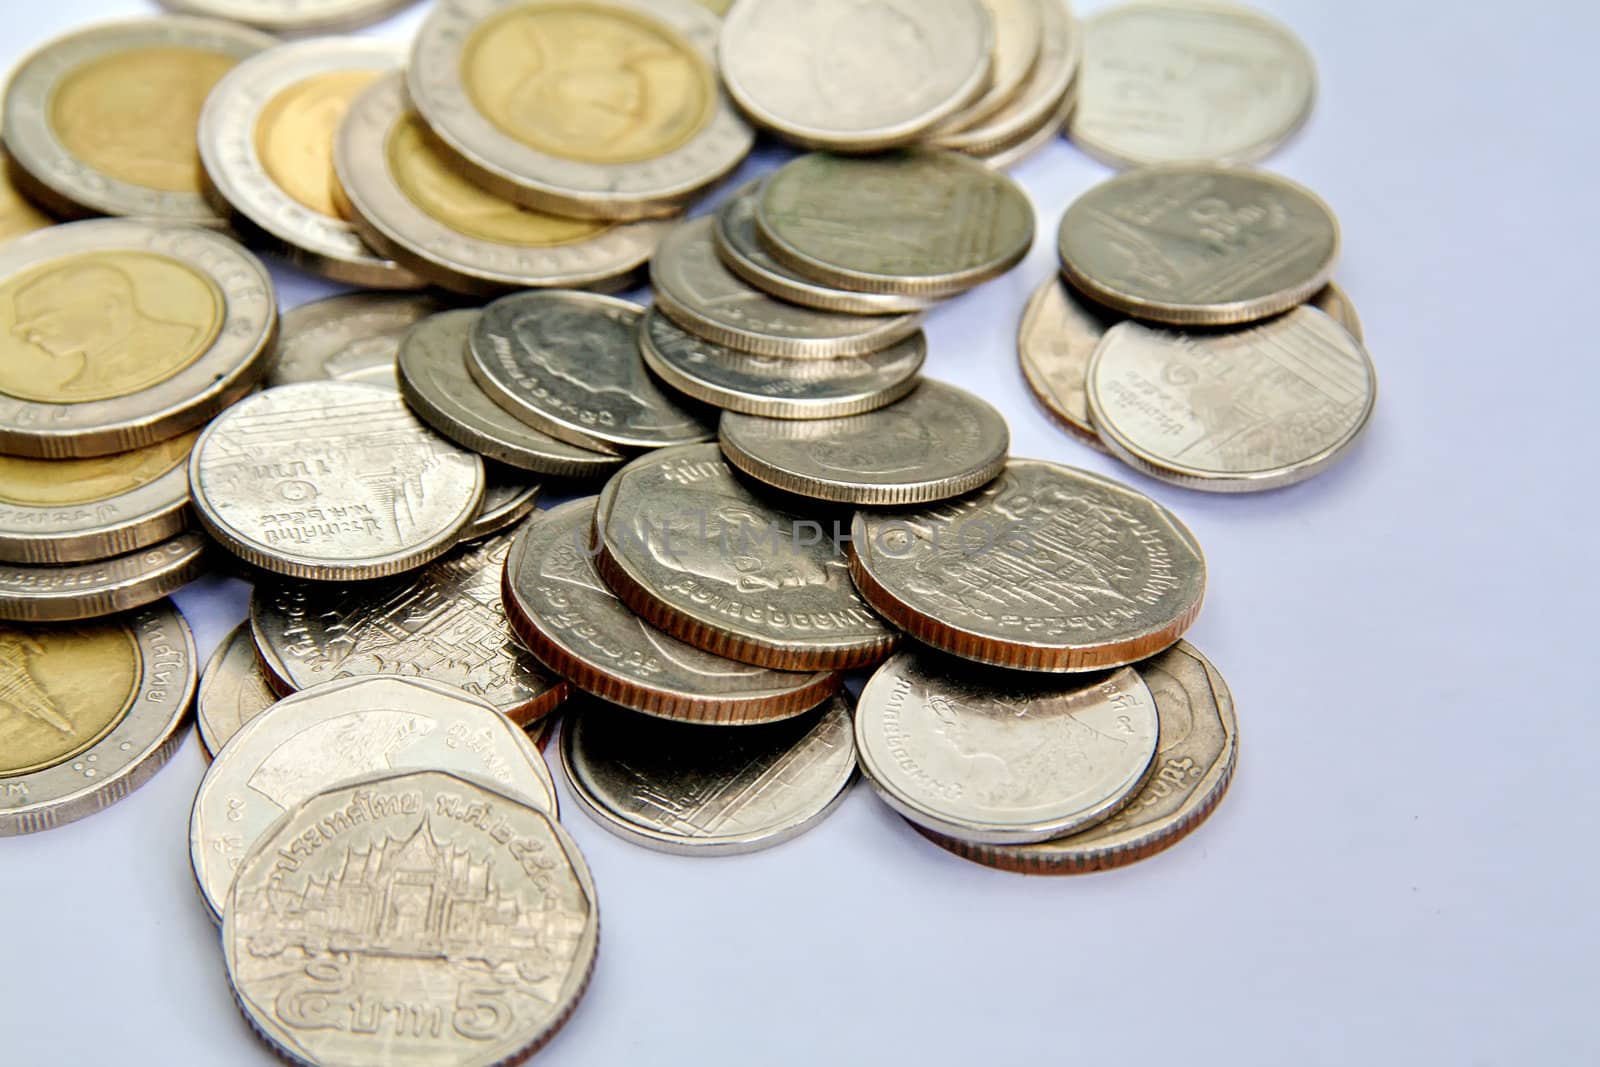 Thai coins isolated